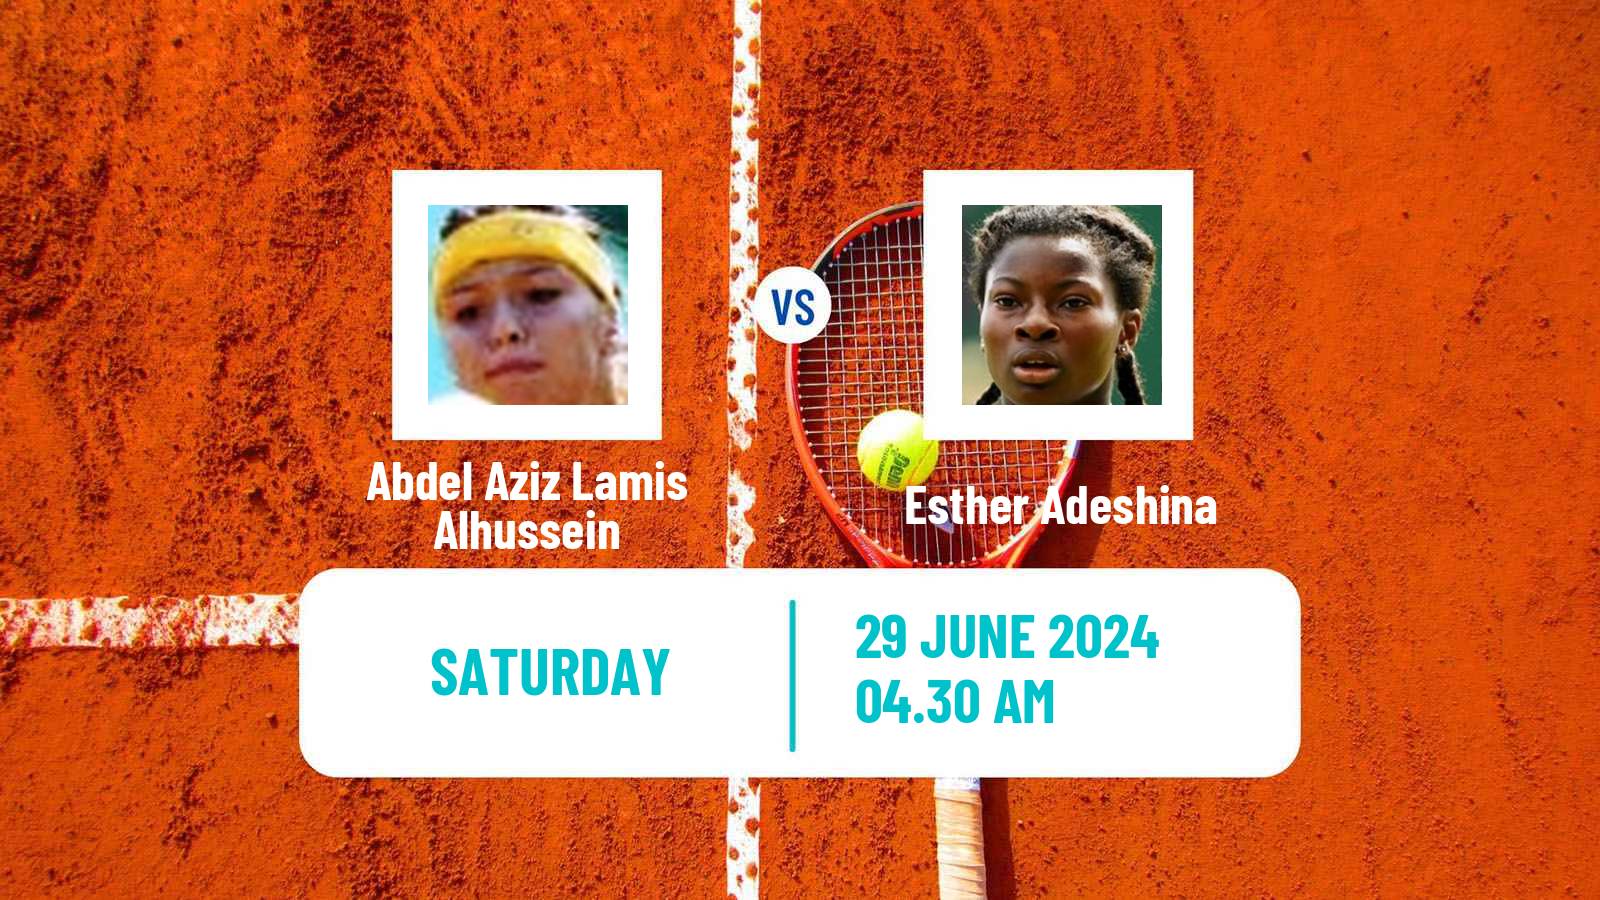 Tennis ITF W15 Monastir 24 Women Abdel Aziz Lamis Alhussein - Esther Adeshina